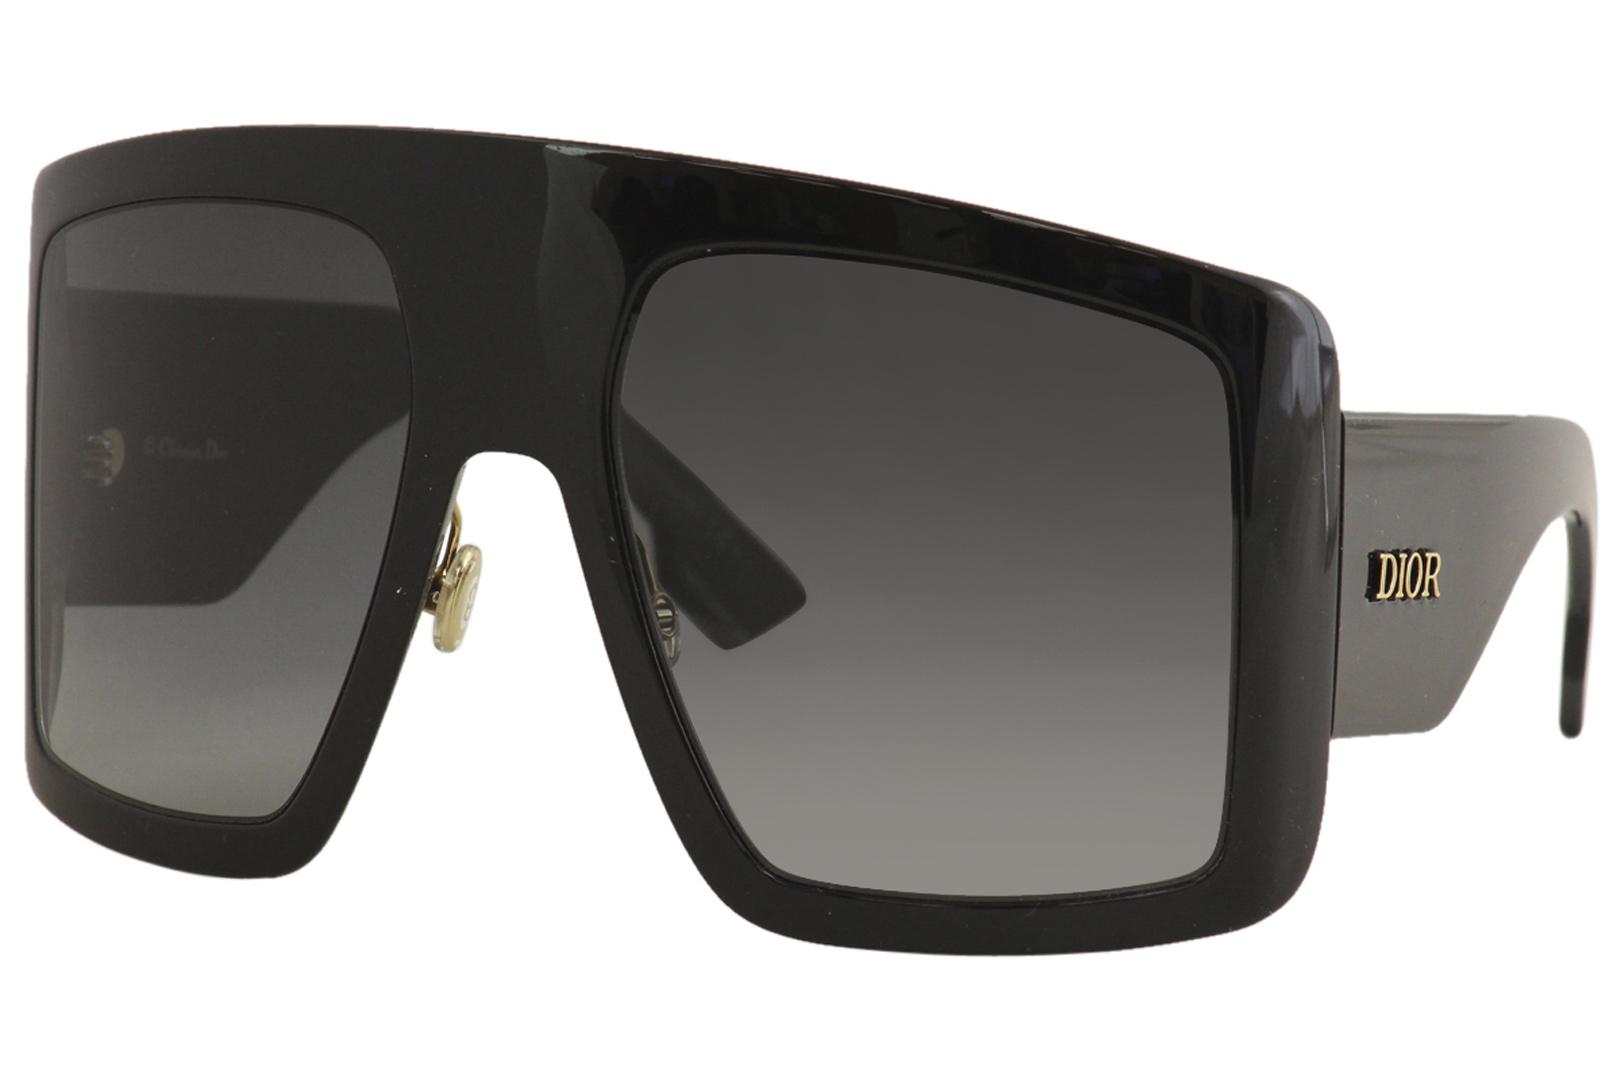 DiorSoLight1 Fashion Square Sunglasses